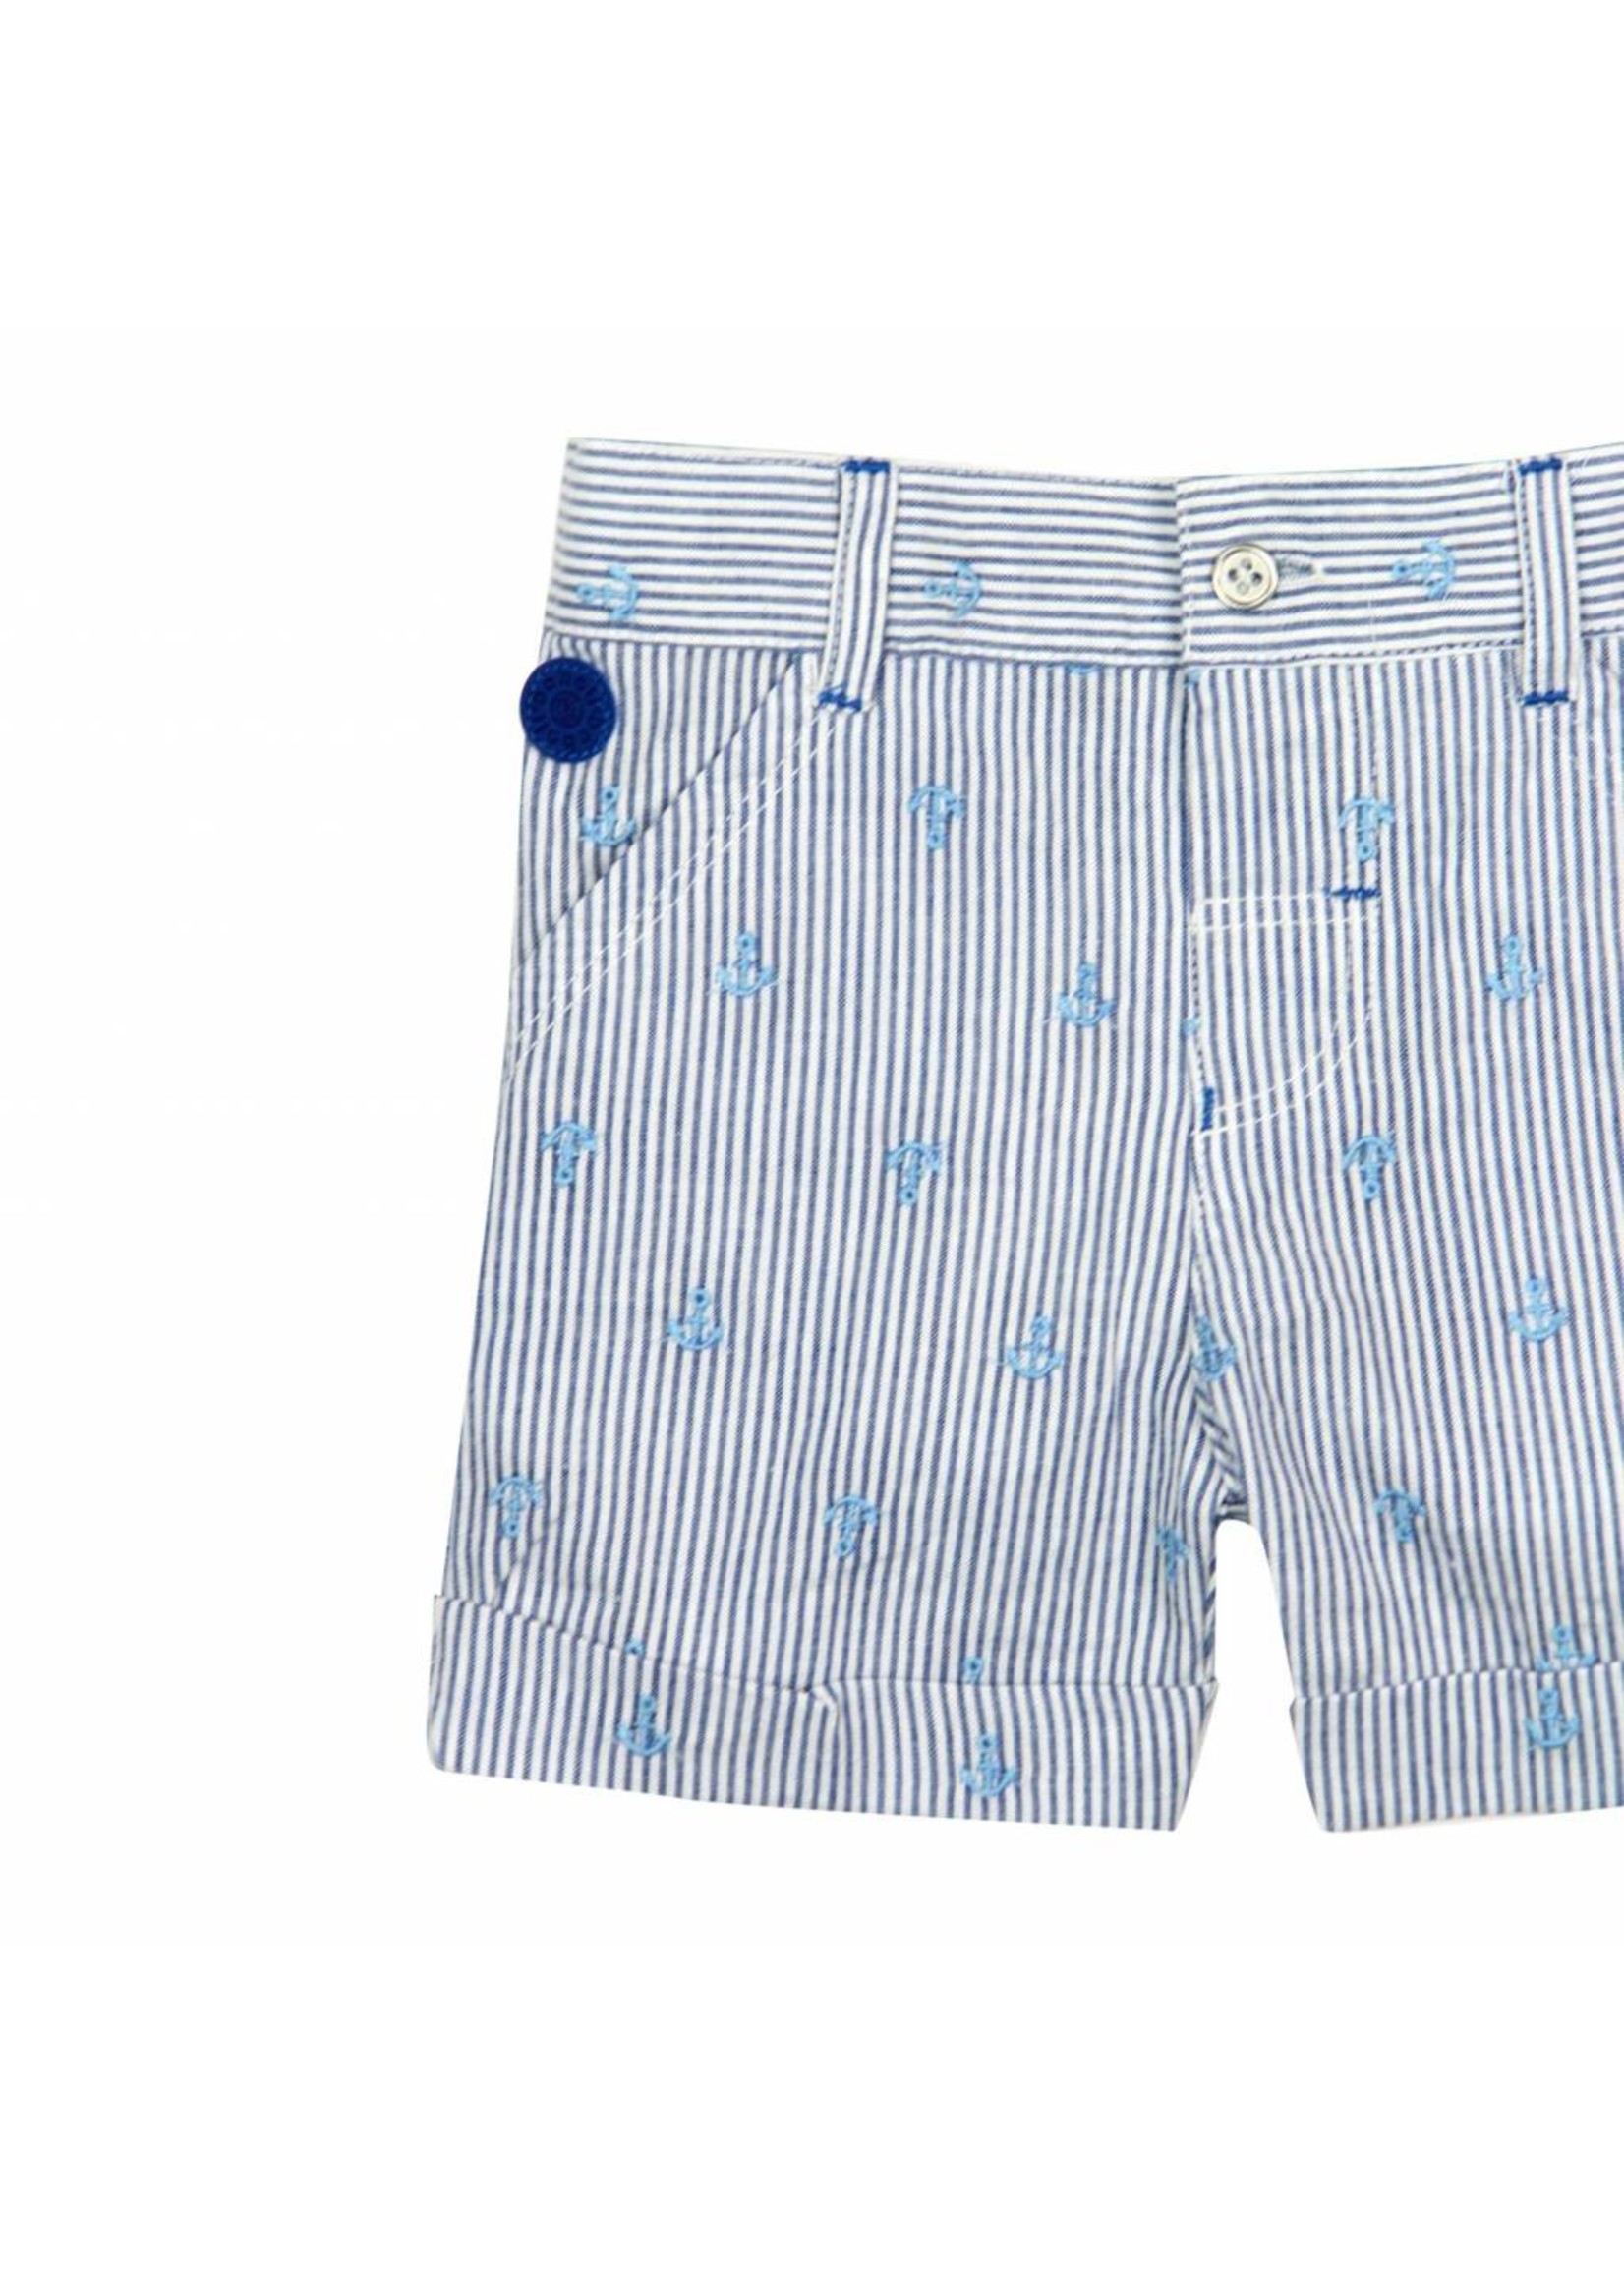 Boboli Boboli Poplin bermuda shorts for baby boy stripes-2